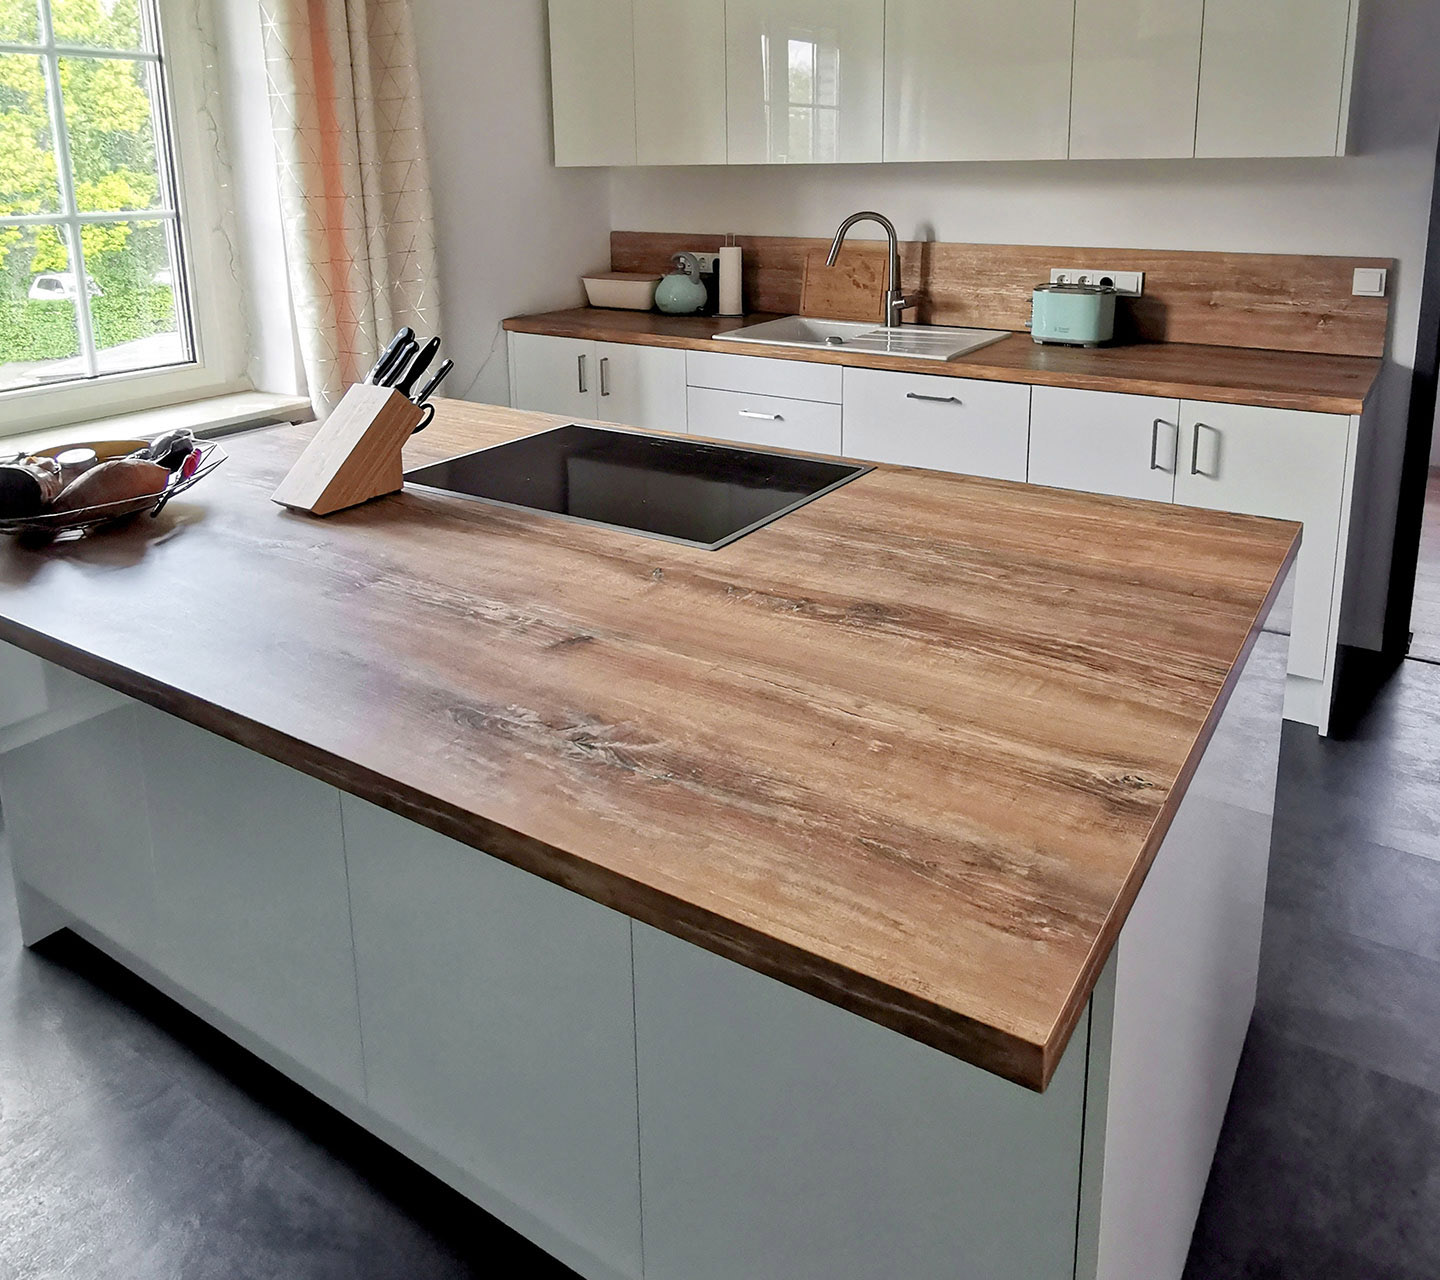 Küche mit großer Kücheninsel. Hochglanzfronten im Kontrast zur Holzdekor-Arbeitsplatte, grifflos ausgeführte Oberschränke